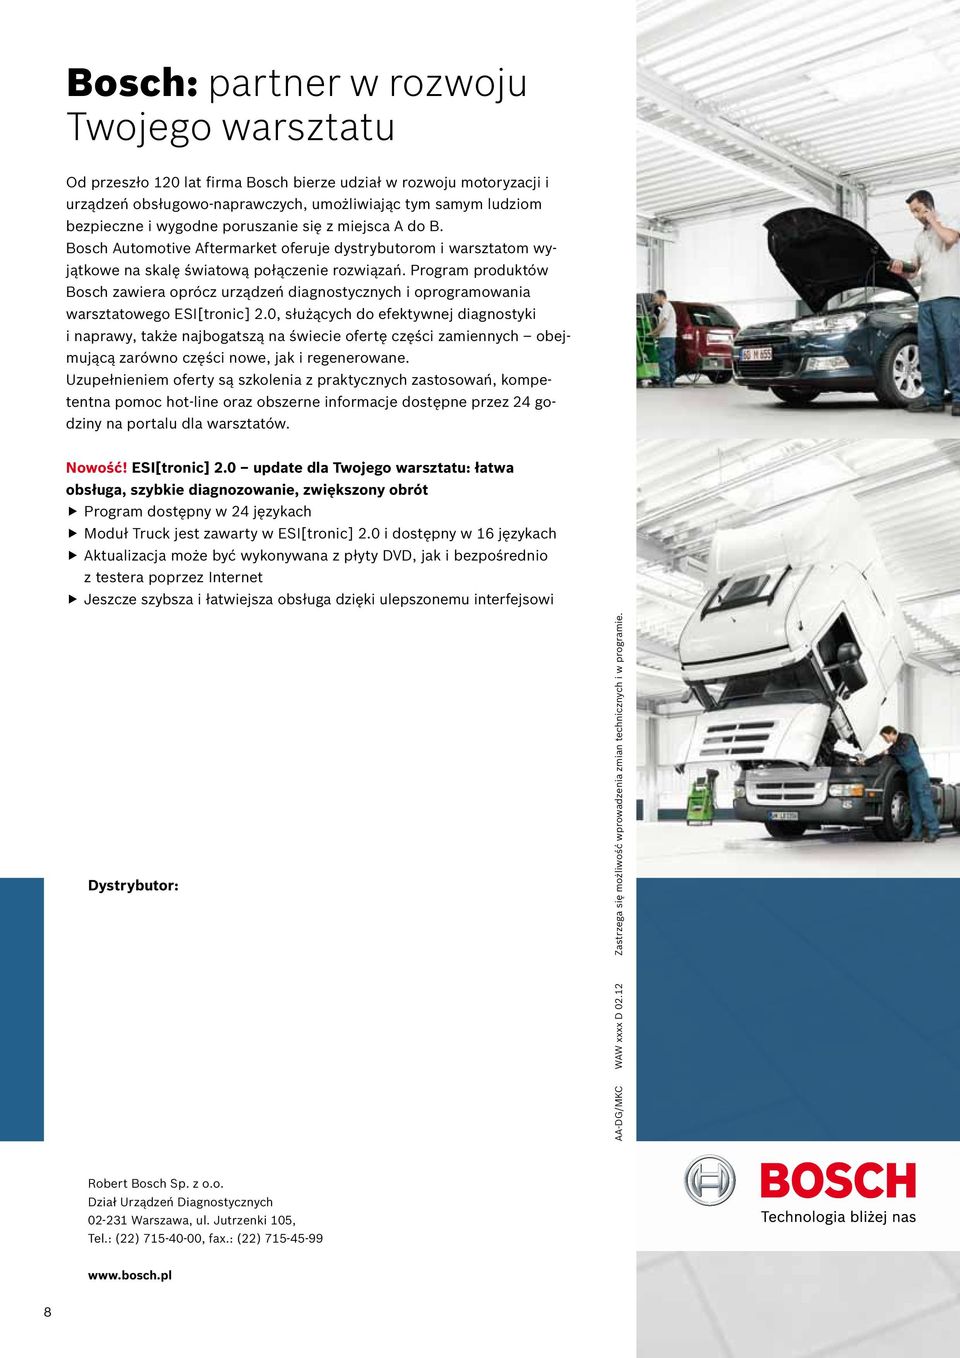 Program produktów Bosch zawiera oprócz urządzeń diagnostycznych i oprogramowania warsztatowego ESI[tronic] 2.